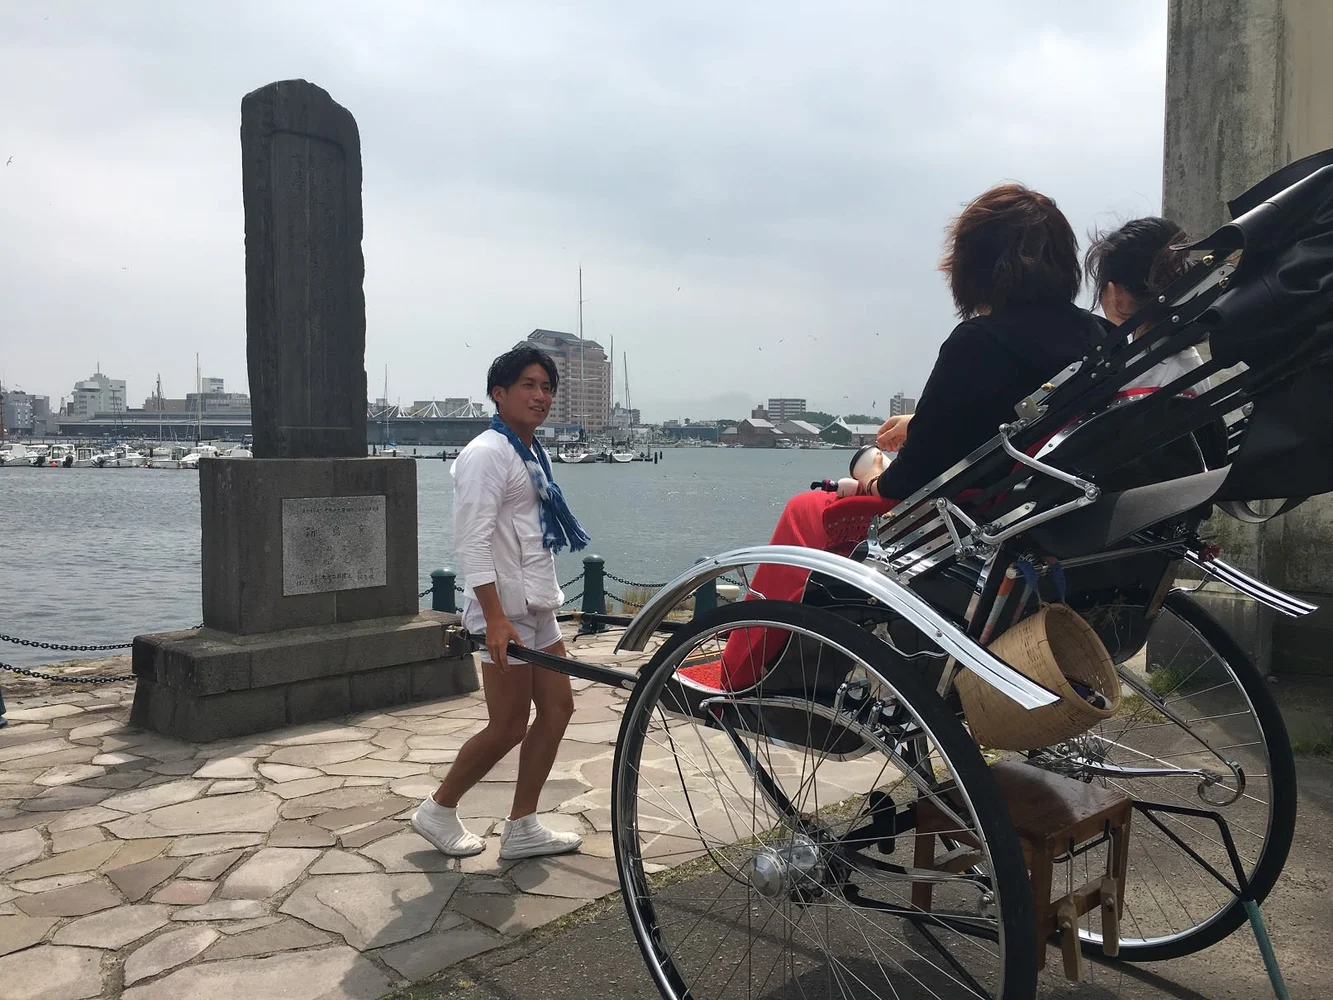 函館 人力車のえびす屋 異国情緒溢れる街を巡る人力車ツアー 予約